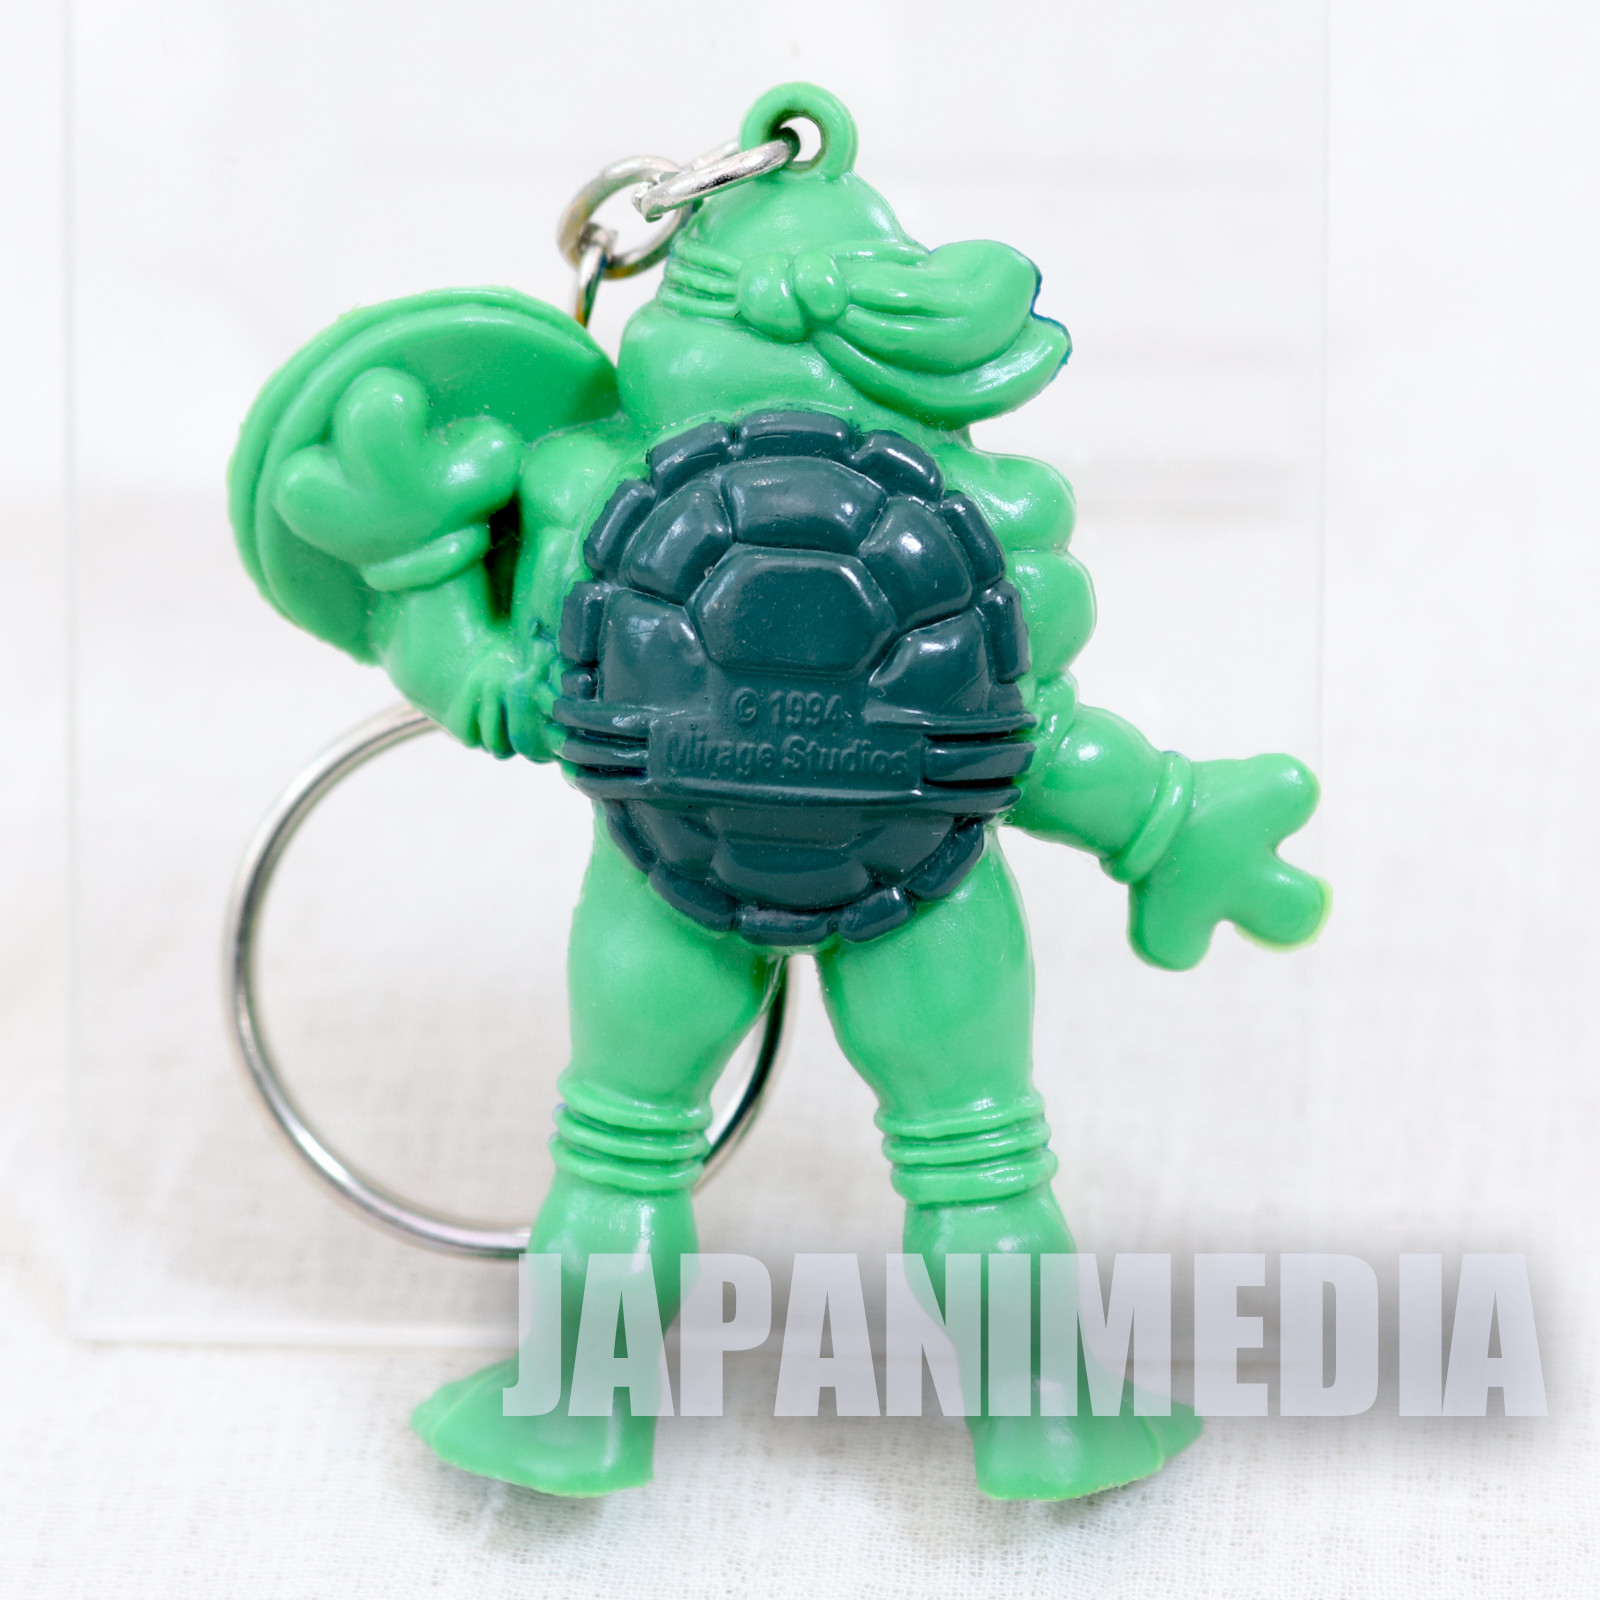 Retro RARE TMNT Teenage Mutant Ninja Turtles Leonardo Figure Key Chain 1994 3